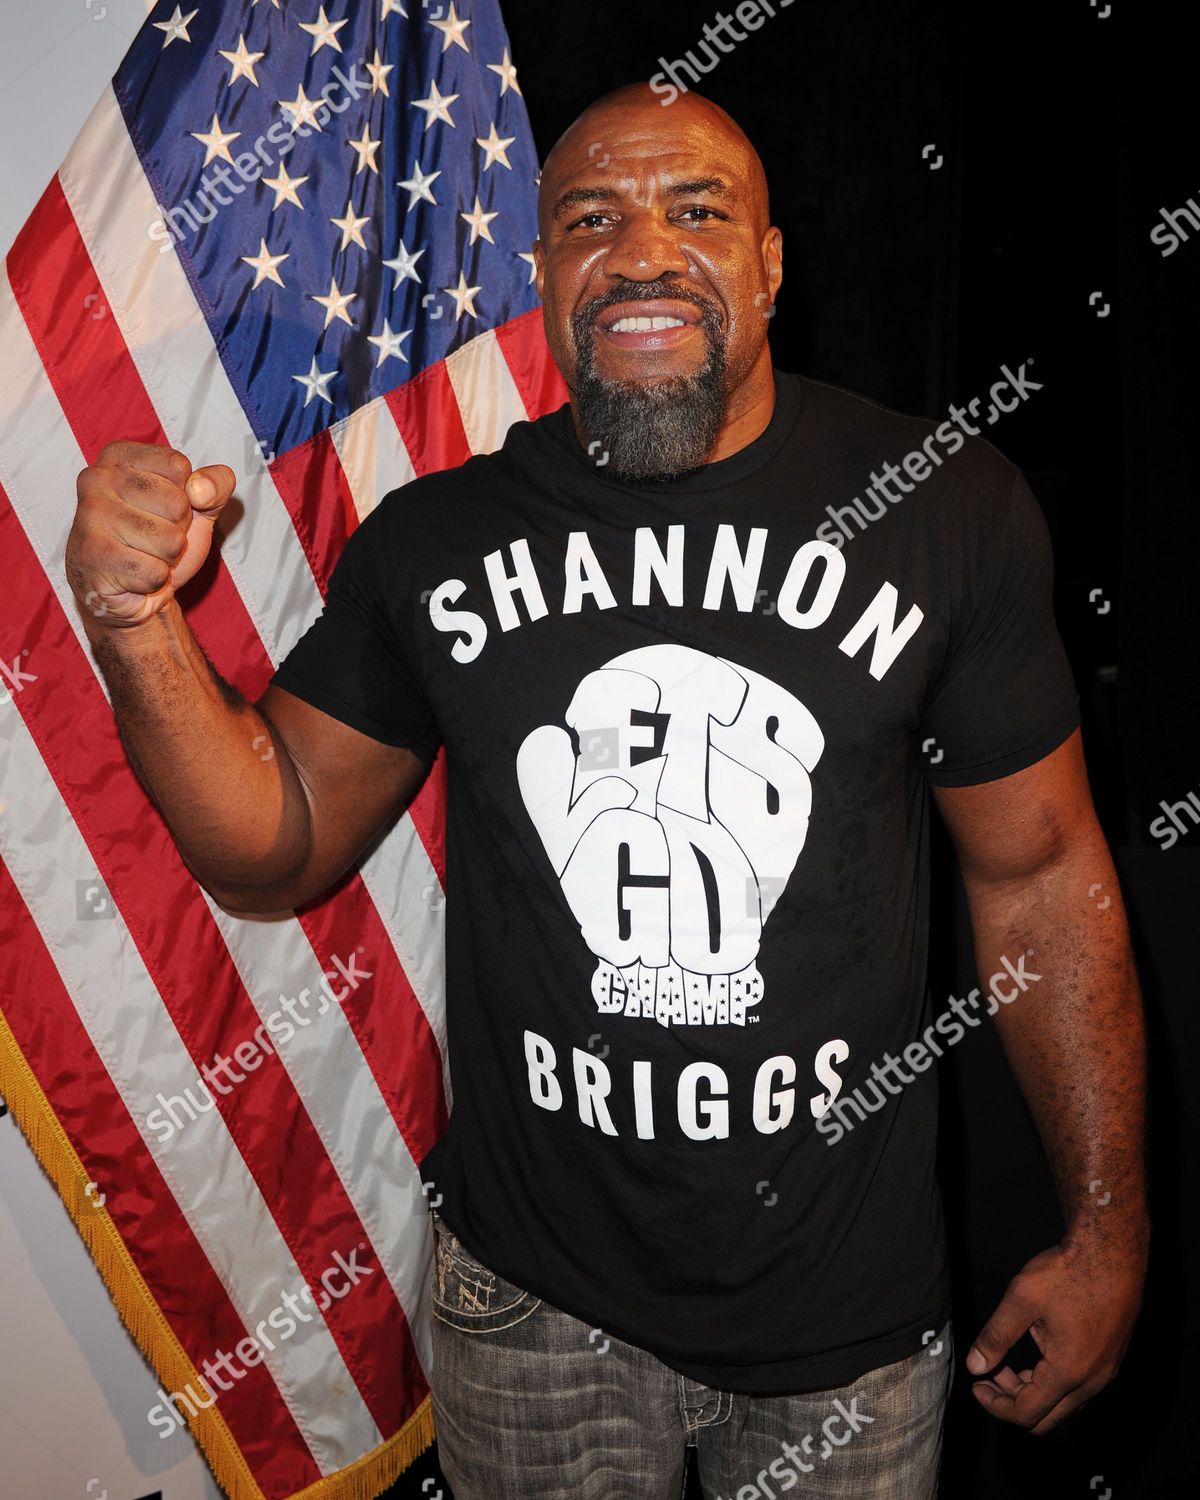 shannon briggs t shirt